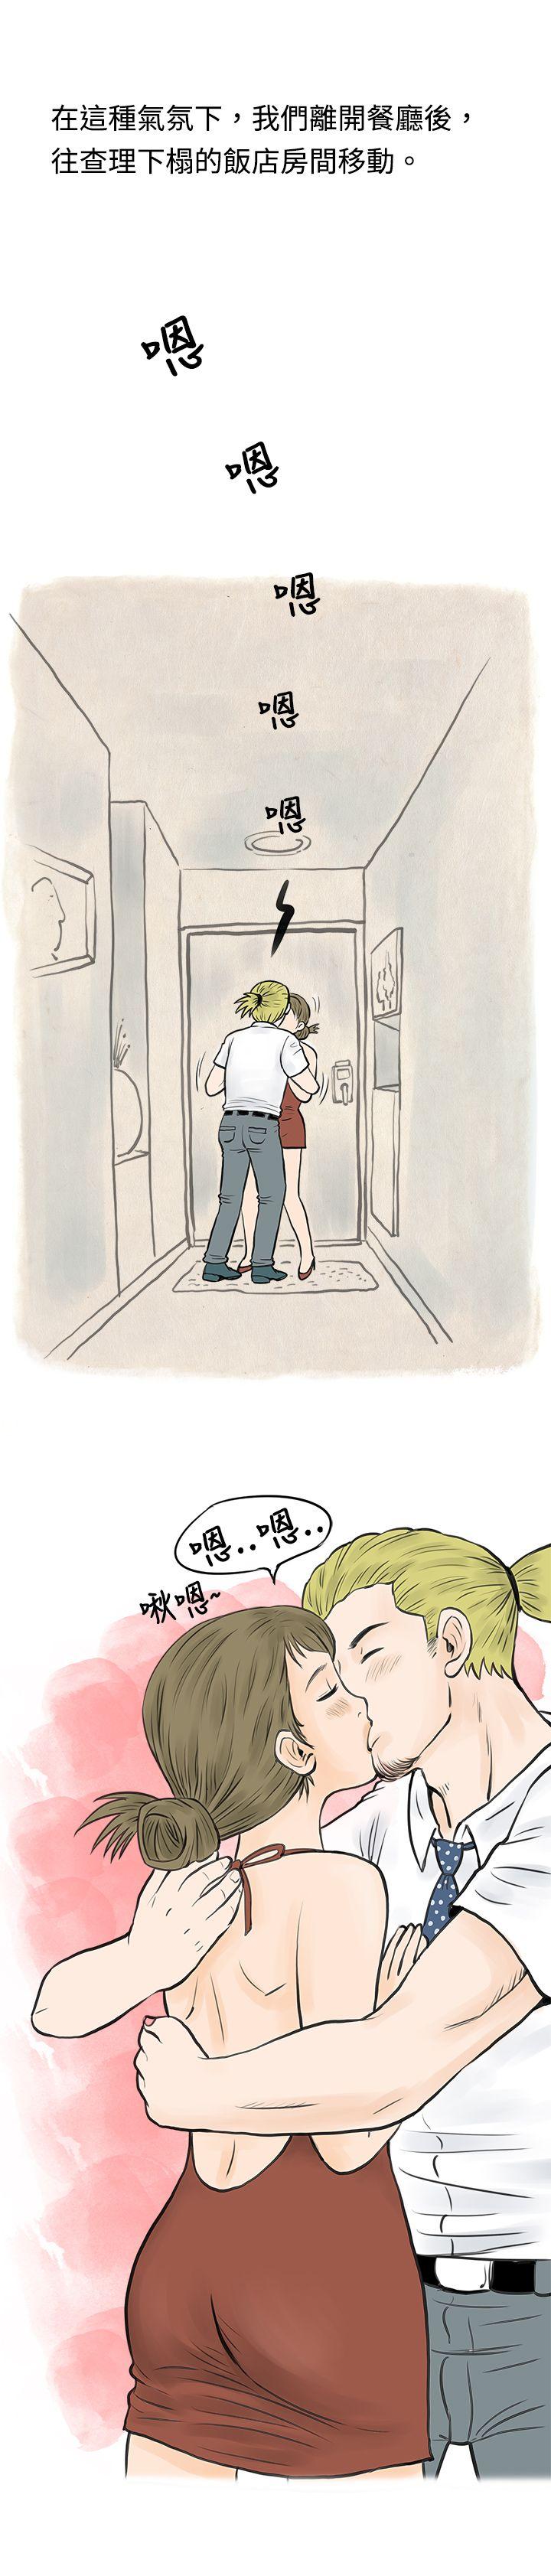 韩国污漫画 秘密Story 在梨泰院游泳池中的小故事(下) 8